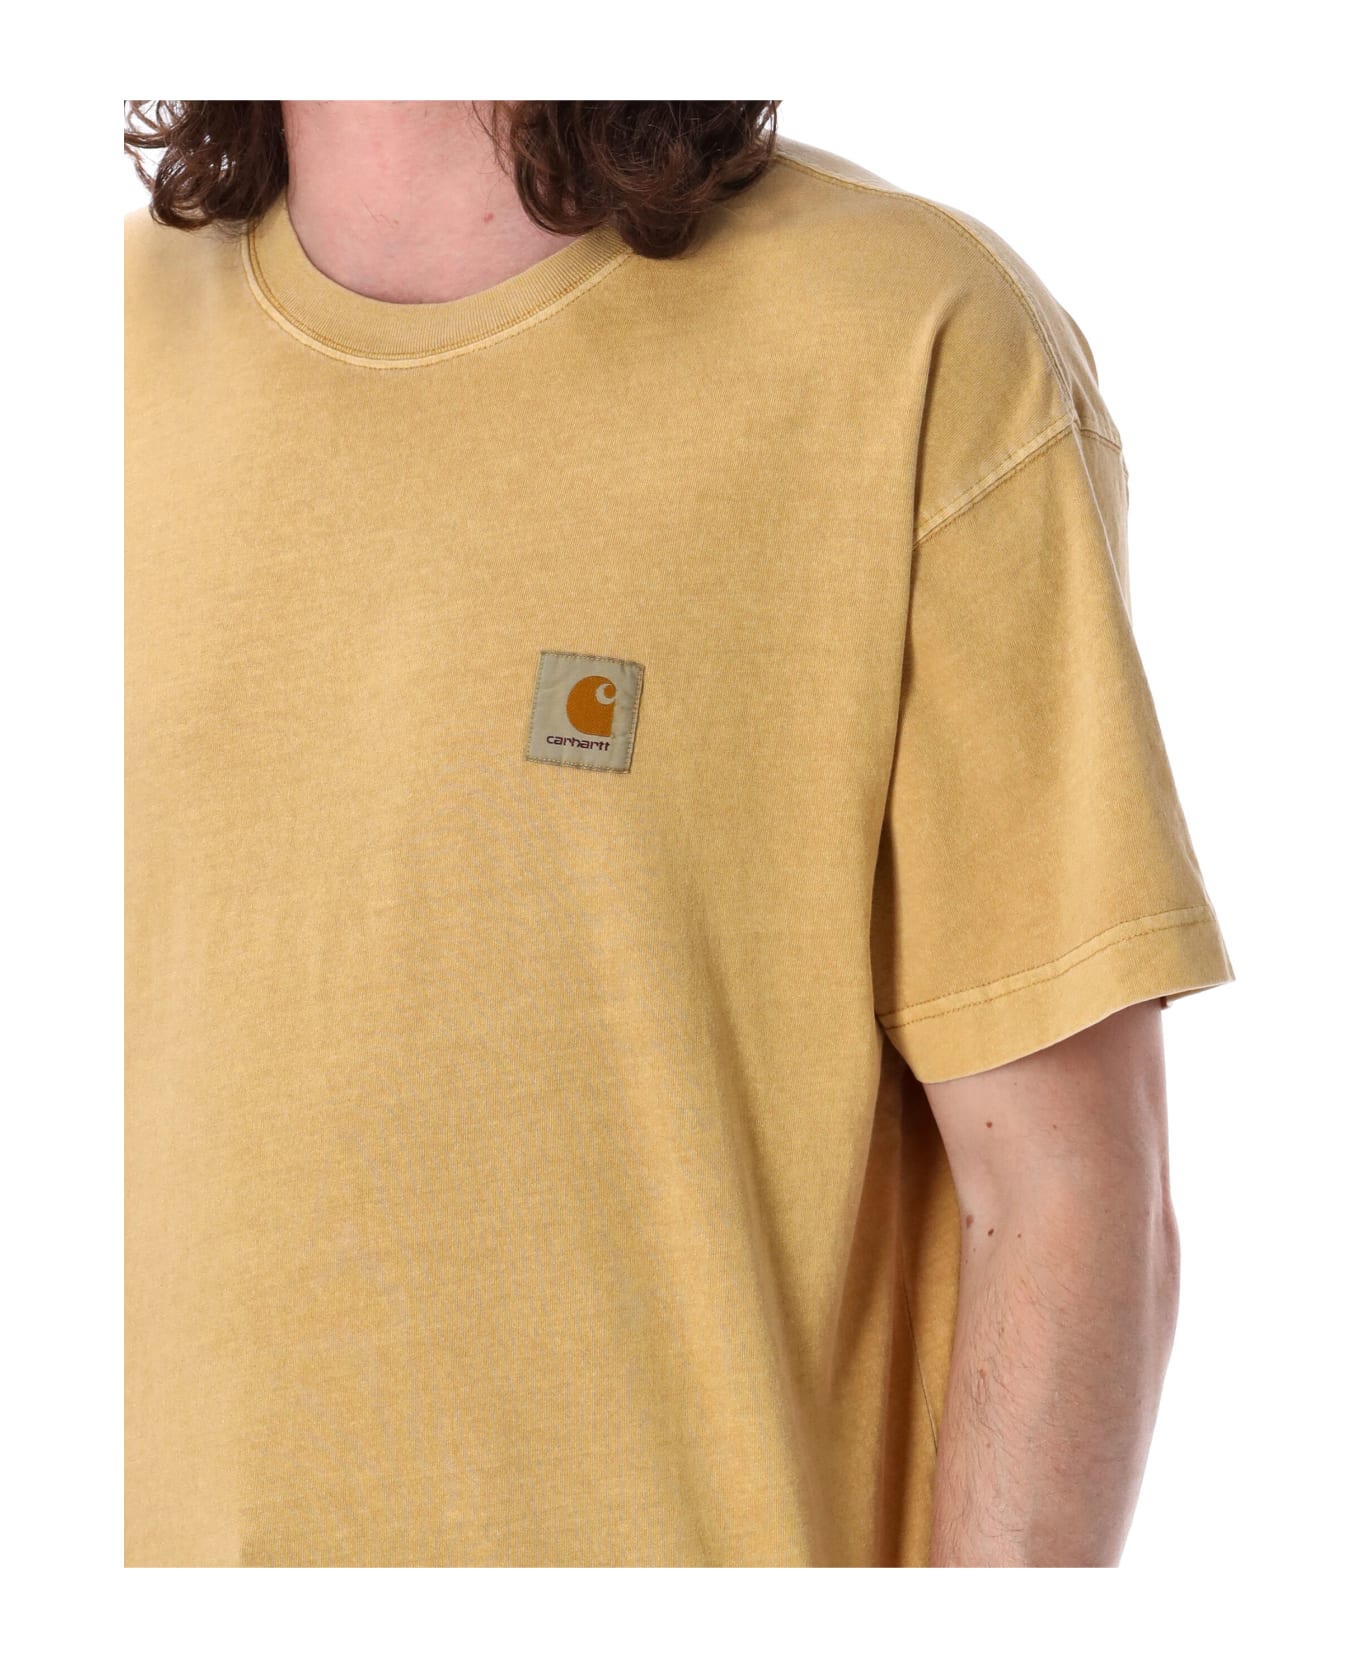 Carhartt S/s Nelson T-shirt - BOURBON シャツ